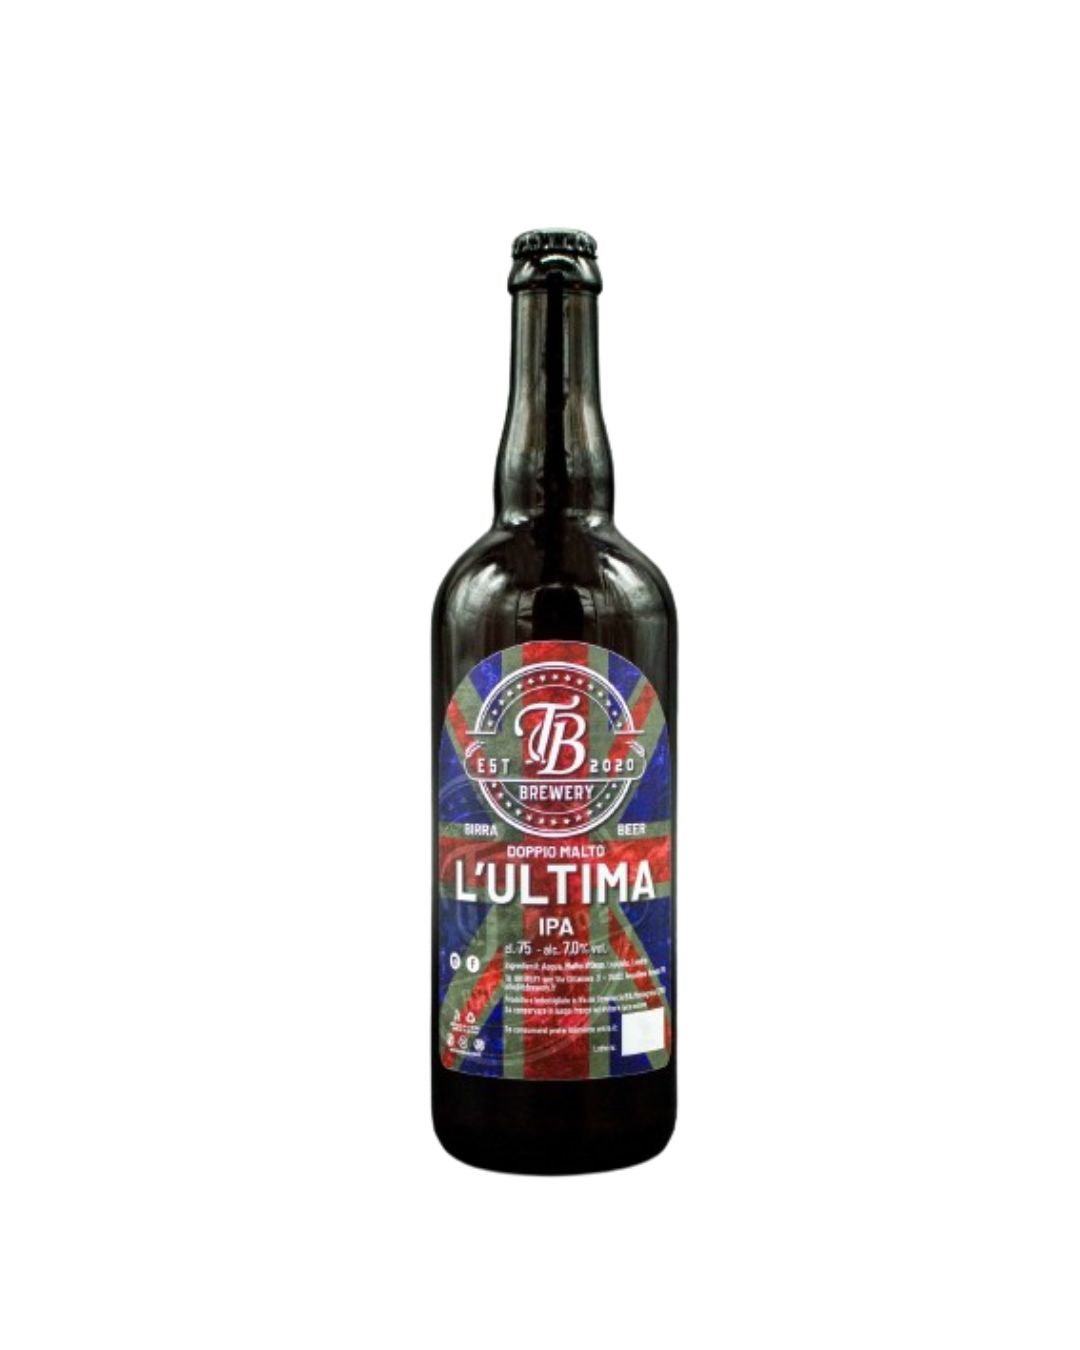 L’ultima - Ipa Vol. 7% - TB Brewery